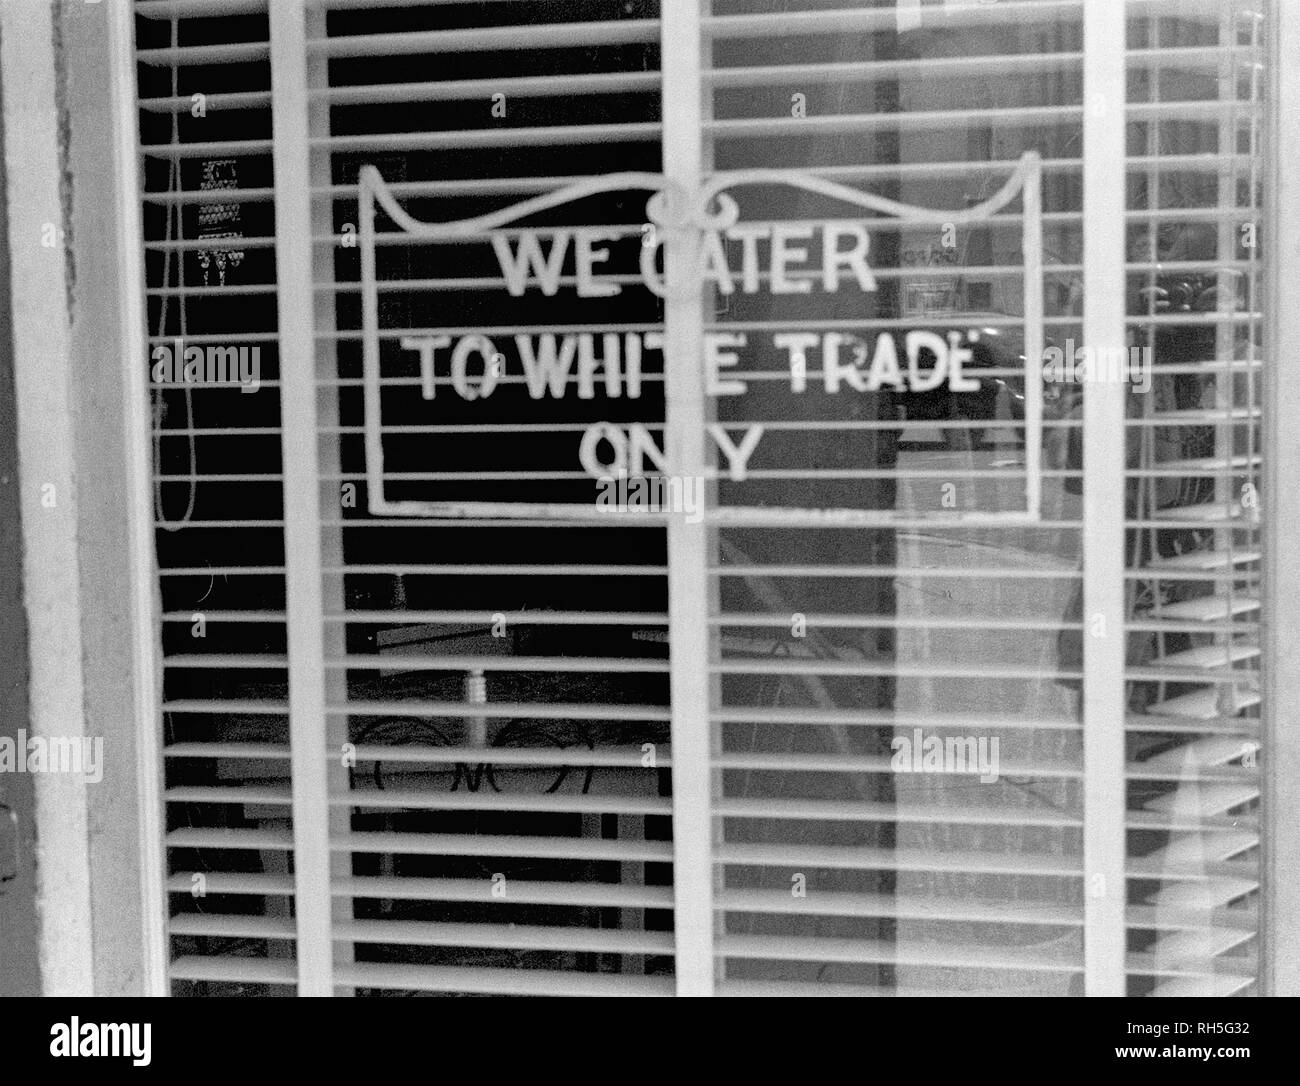 Firmar en un restaurante: "Atendemos a blanco el comercio solamente.", tomado en Lancaster, Ohio, agosto de 1938 Foto de stock